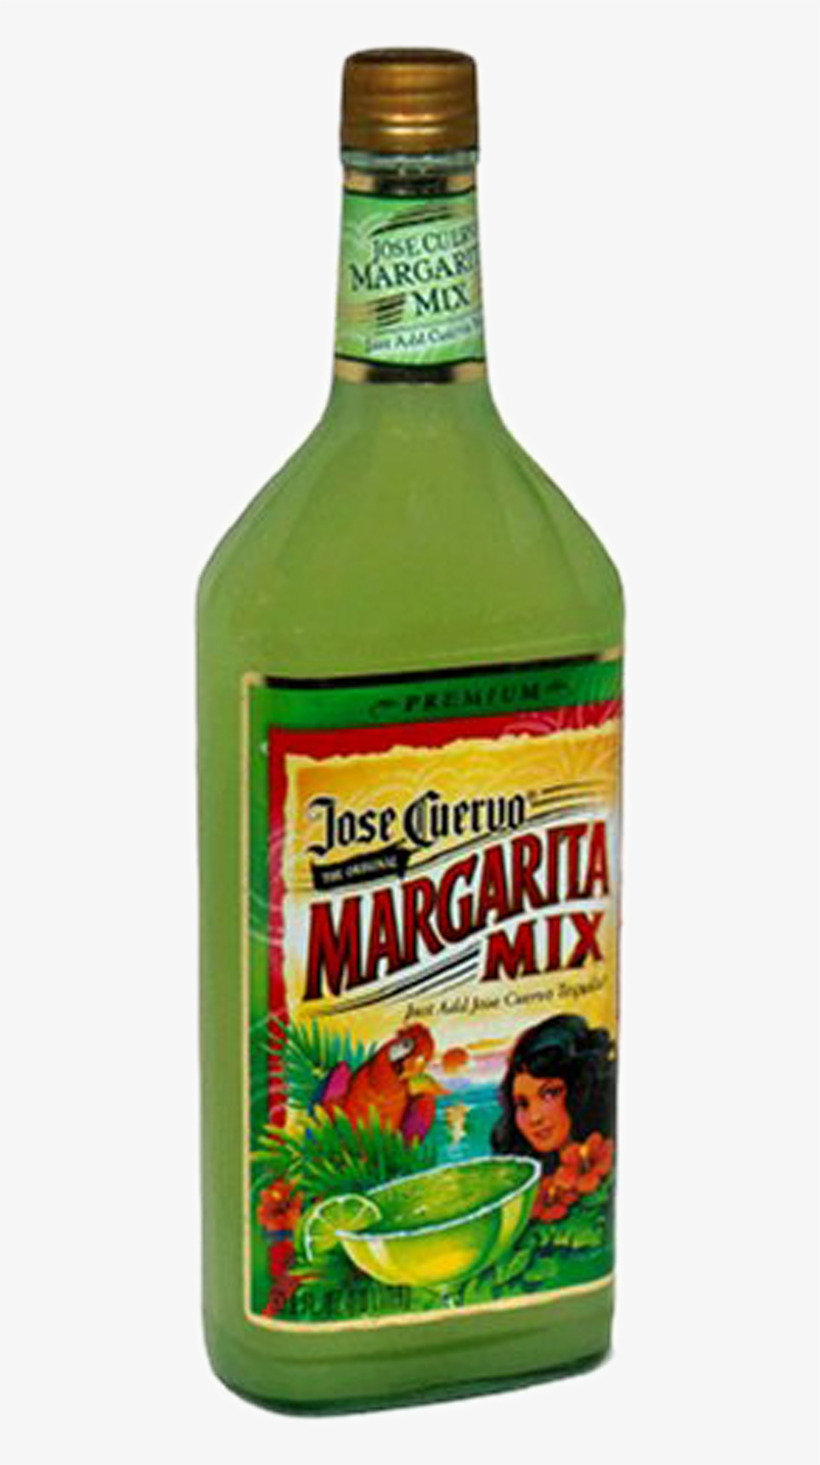 Jose Cuervo Margarita Mix 1ltr mexico, transparent png. 